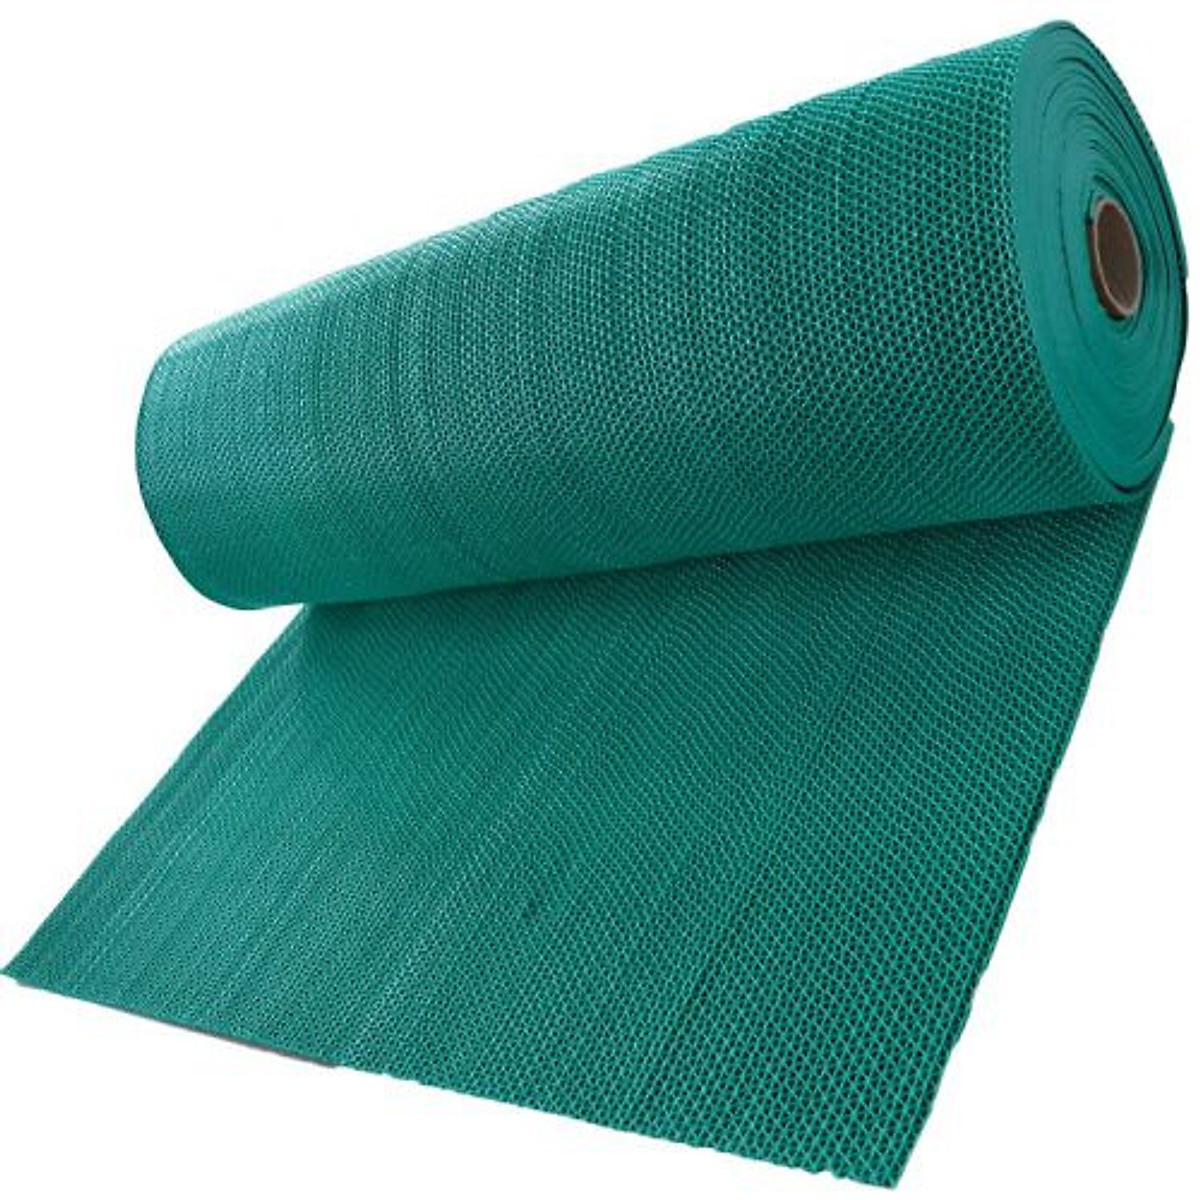 Thảm nhựa lưới chống trơn màu xanh lá cho nhà cửa, nhà tắm, văn phòng, hồ bơi